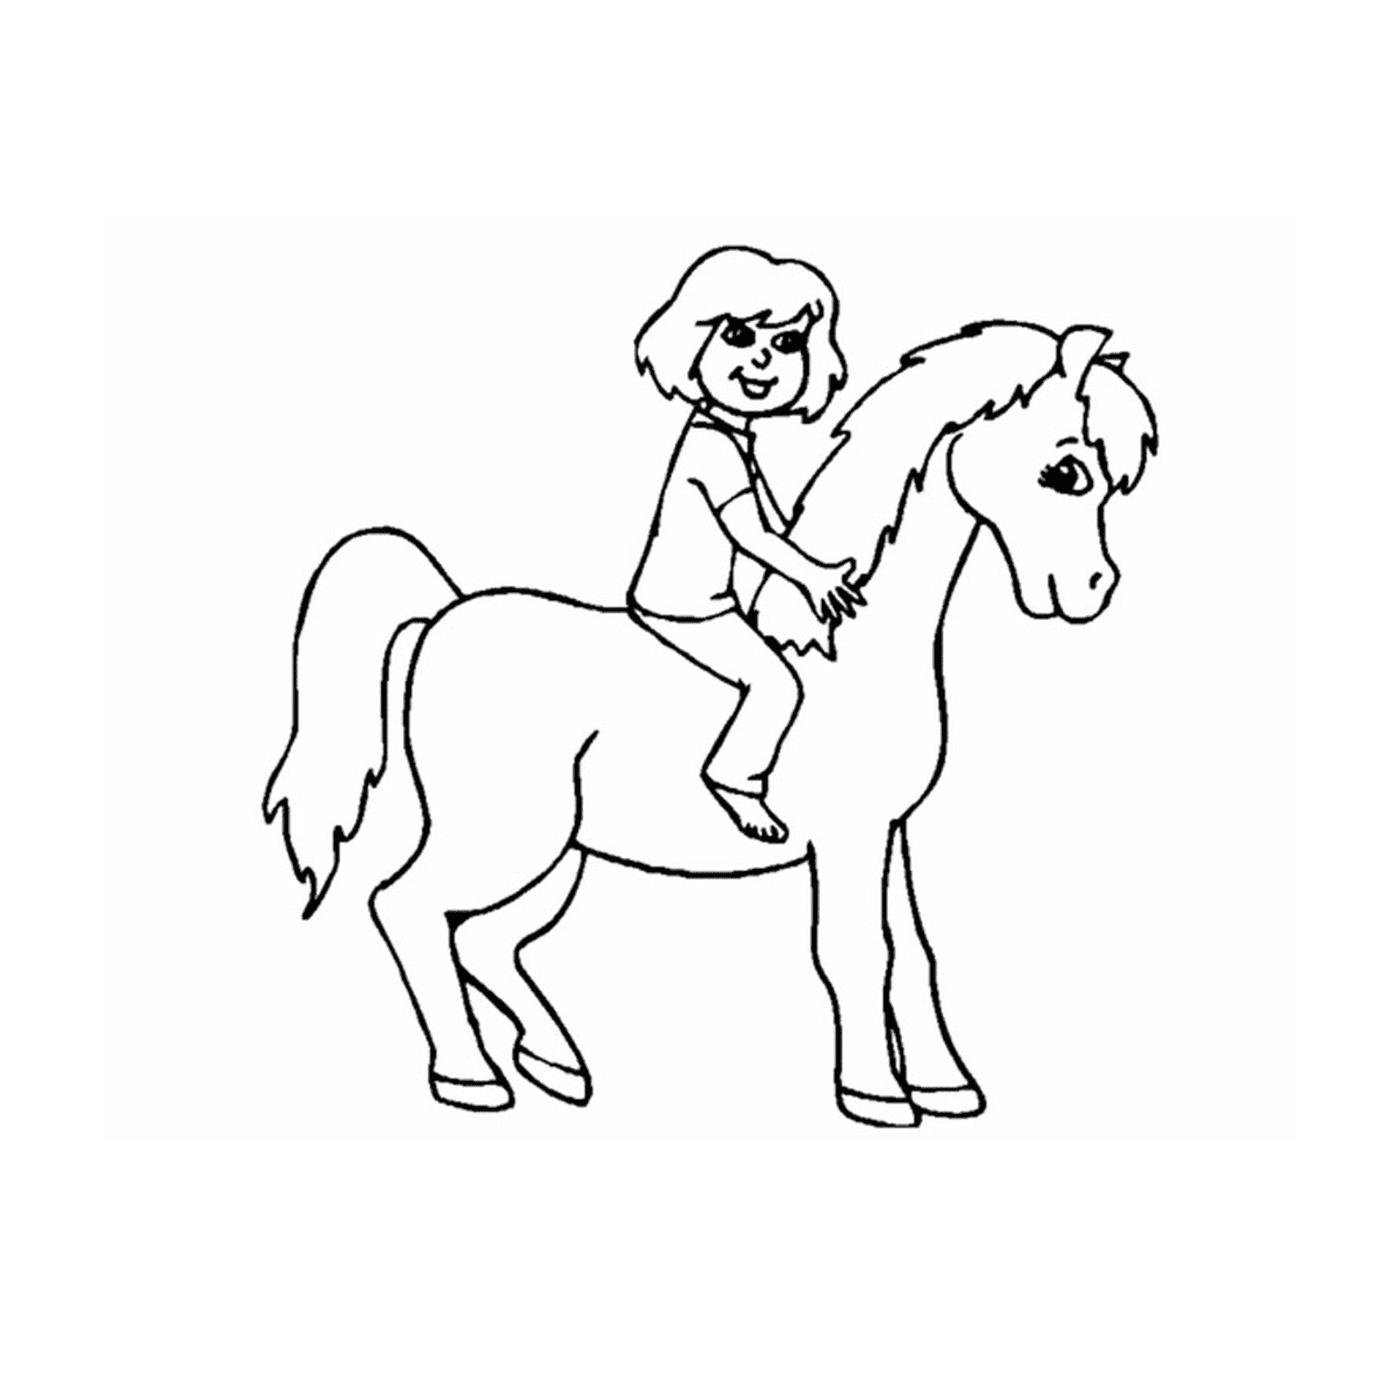  ragazza equitazione cavallo 